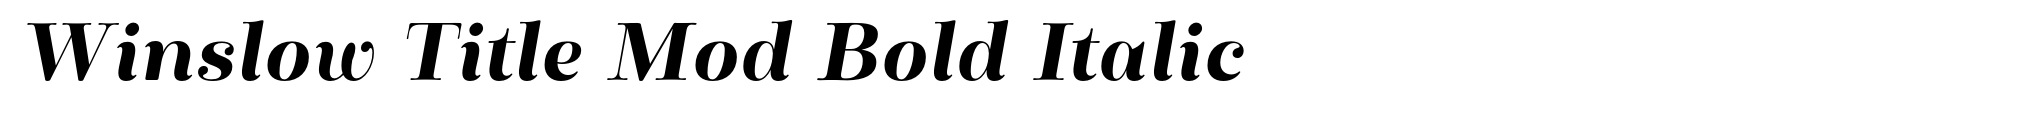 Winslow Title Mod Bold Italic image